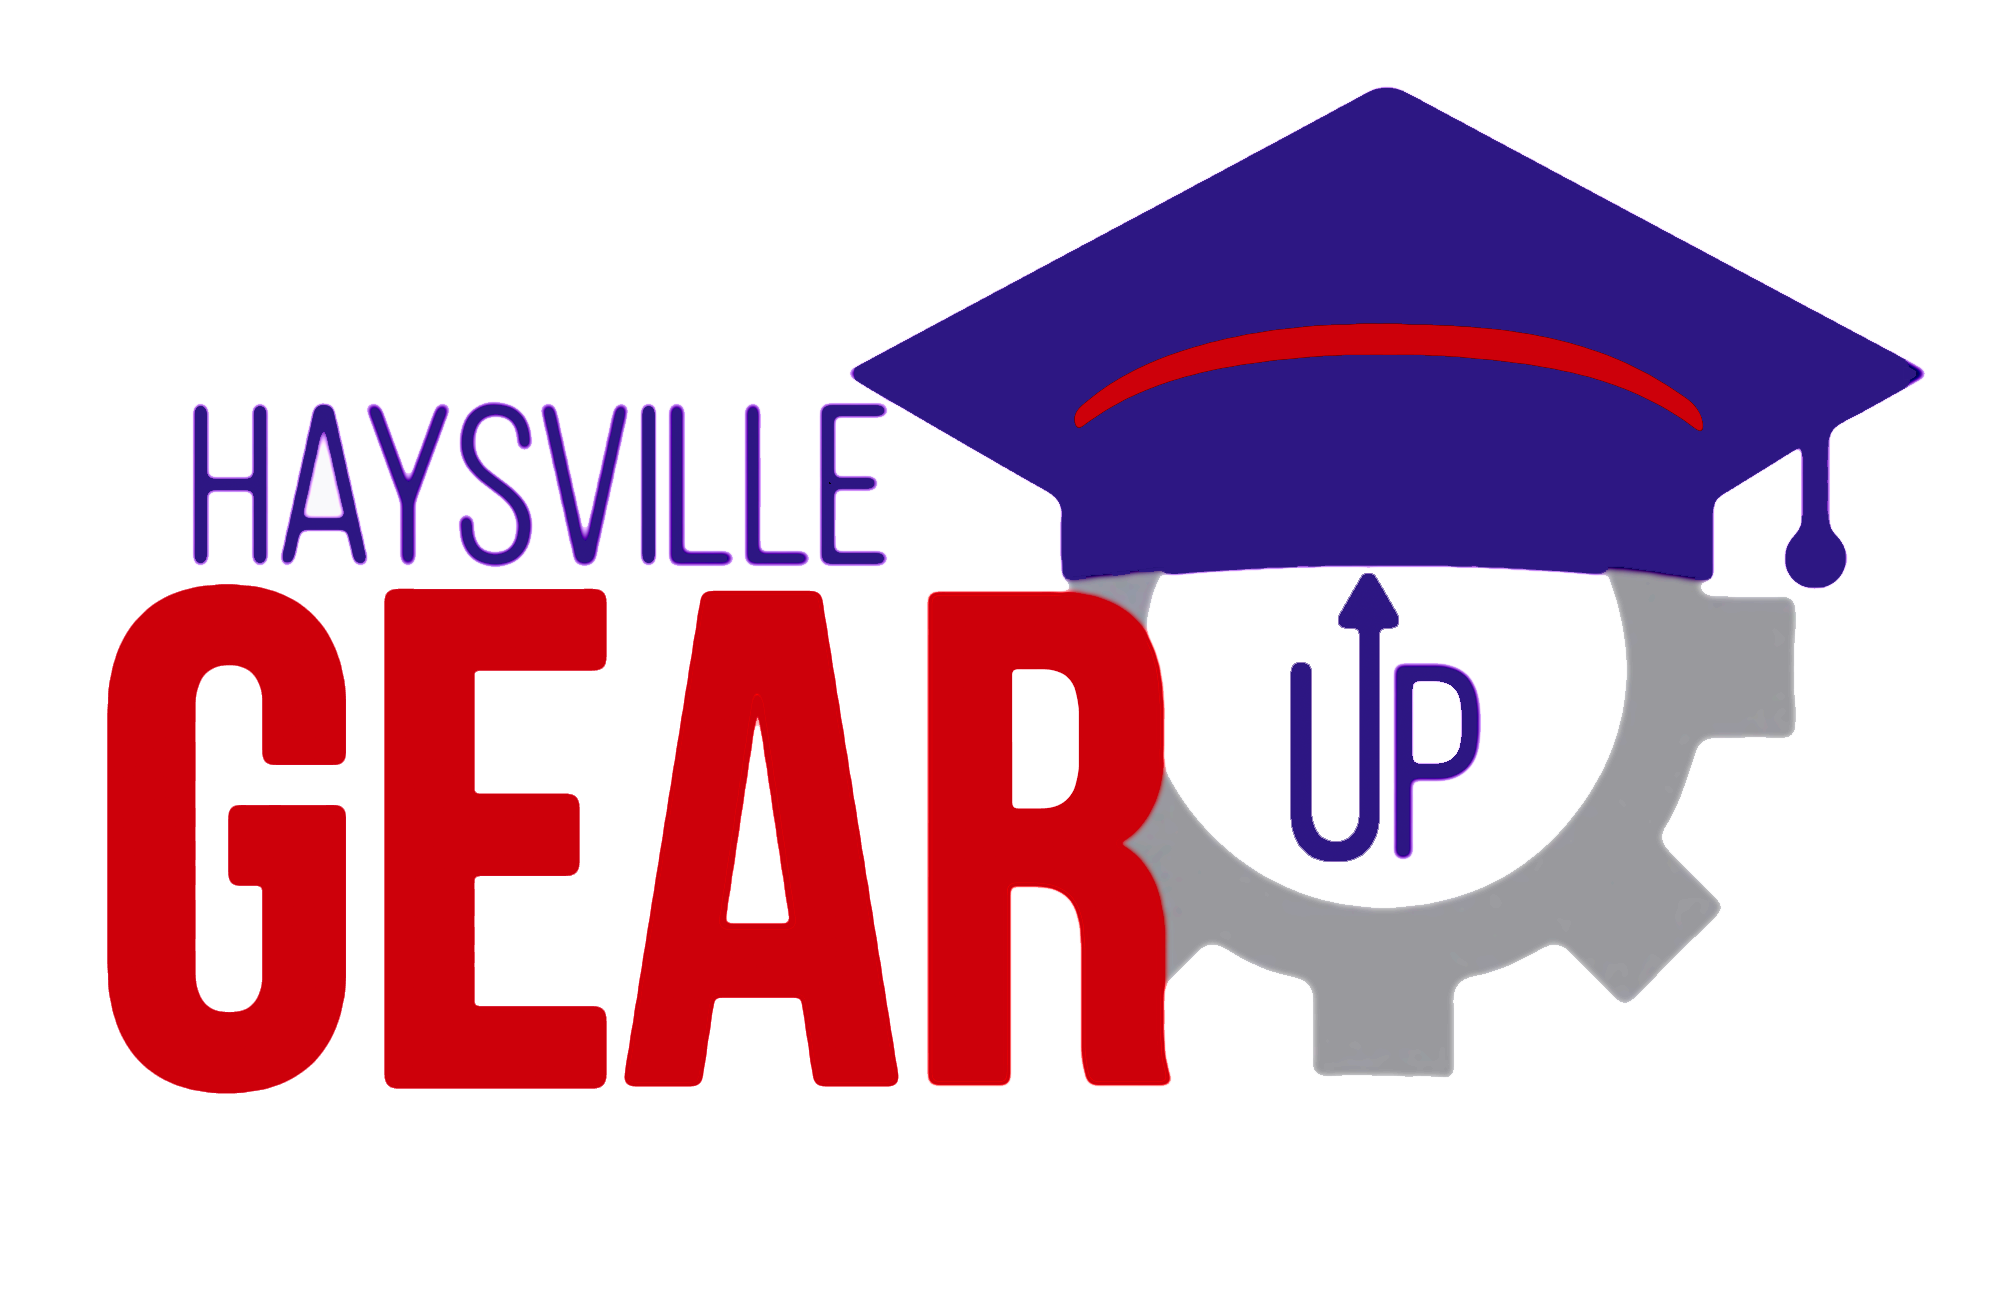 Haysville GEAR UP Logo